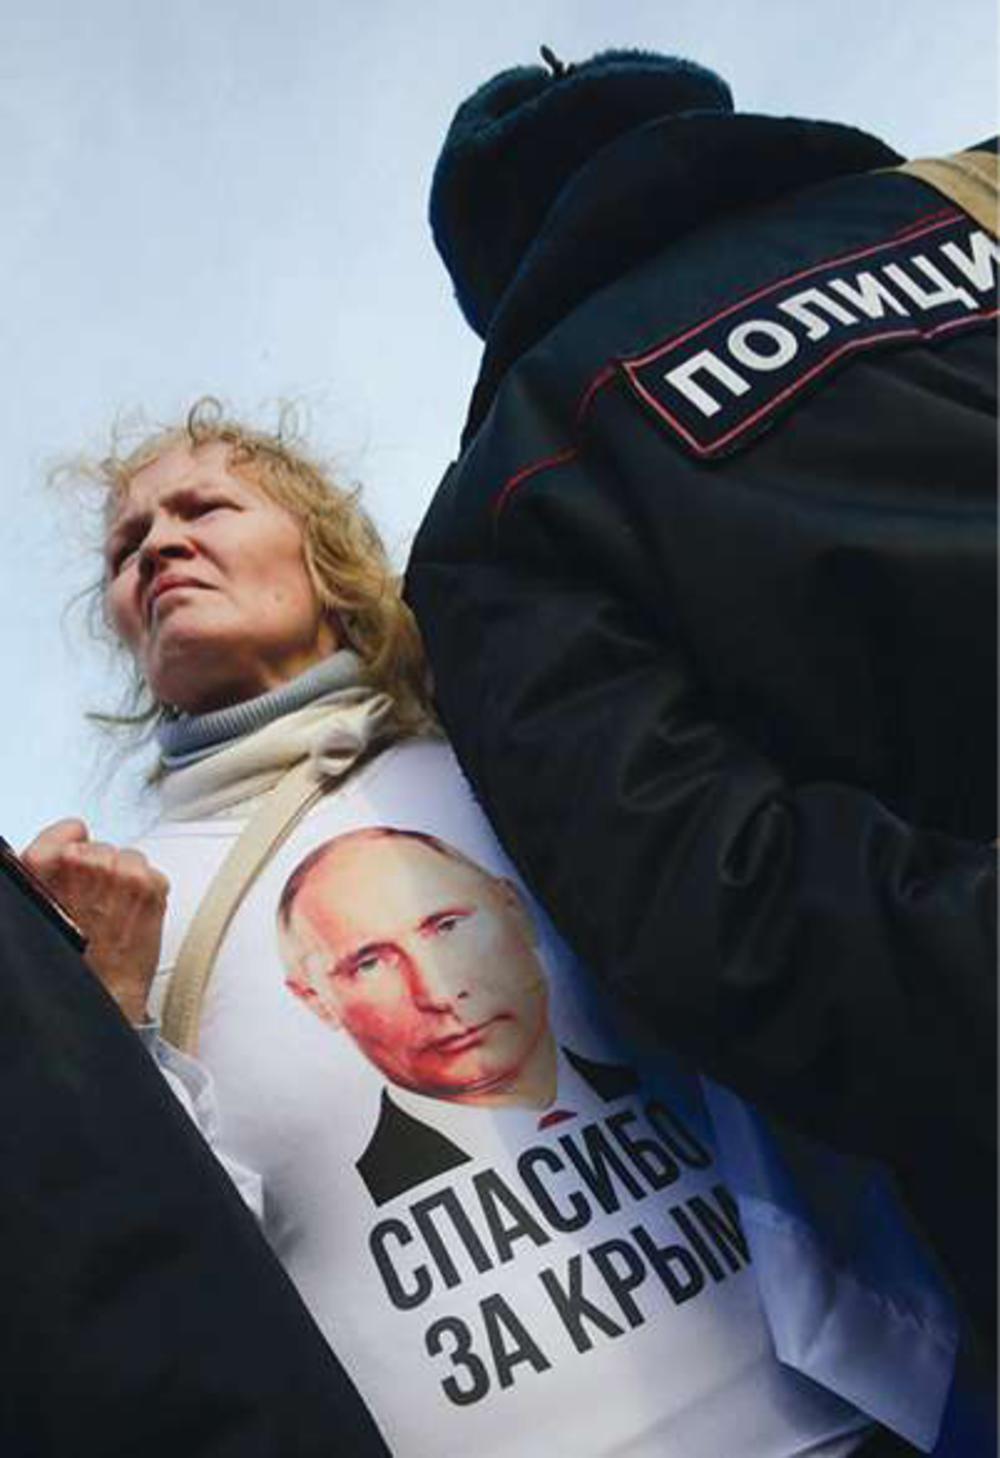 Moskou, 18 maart 2015. Op de eerste verjaardag van de annexatie van de Krim demonstreert een vrouw haar steun aan Poetin. Op haar t-shirt staat de slogan 